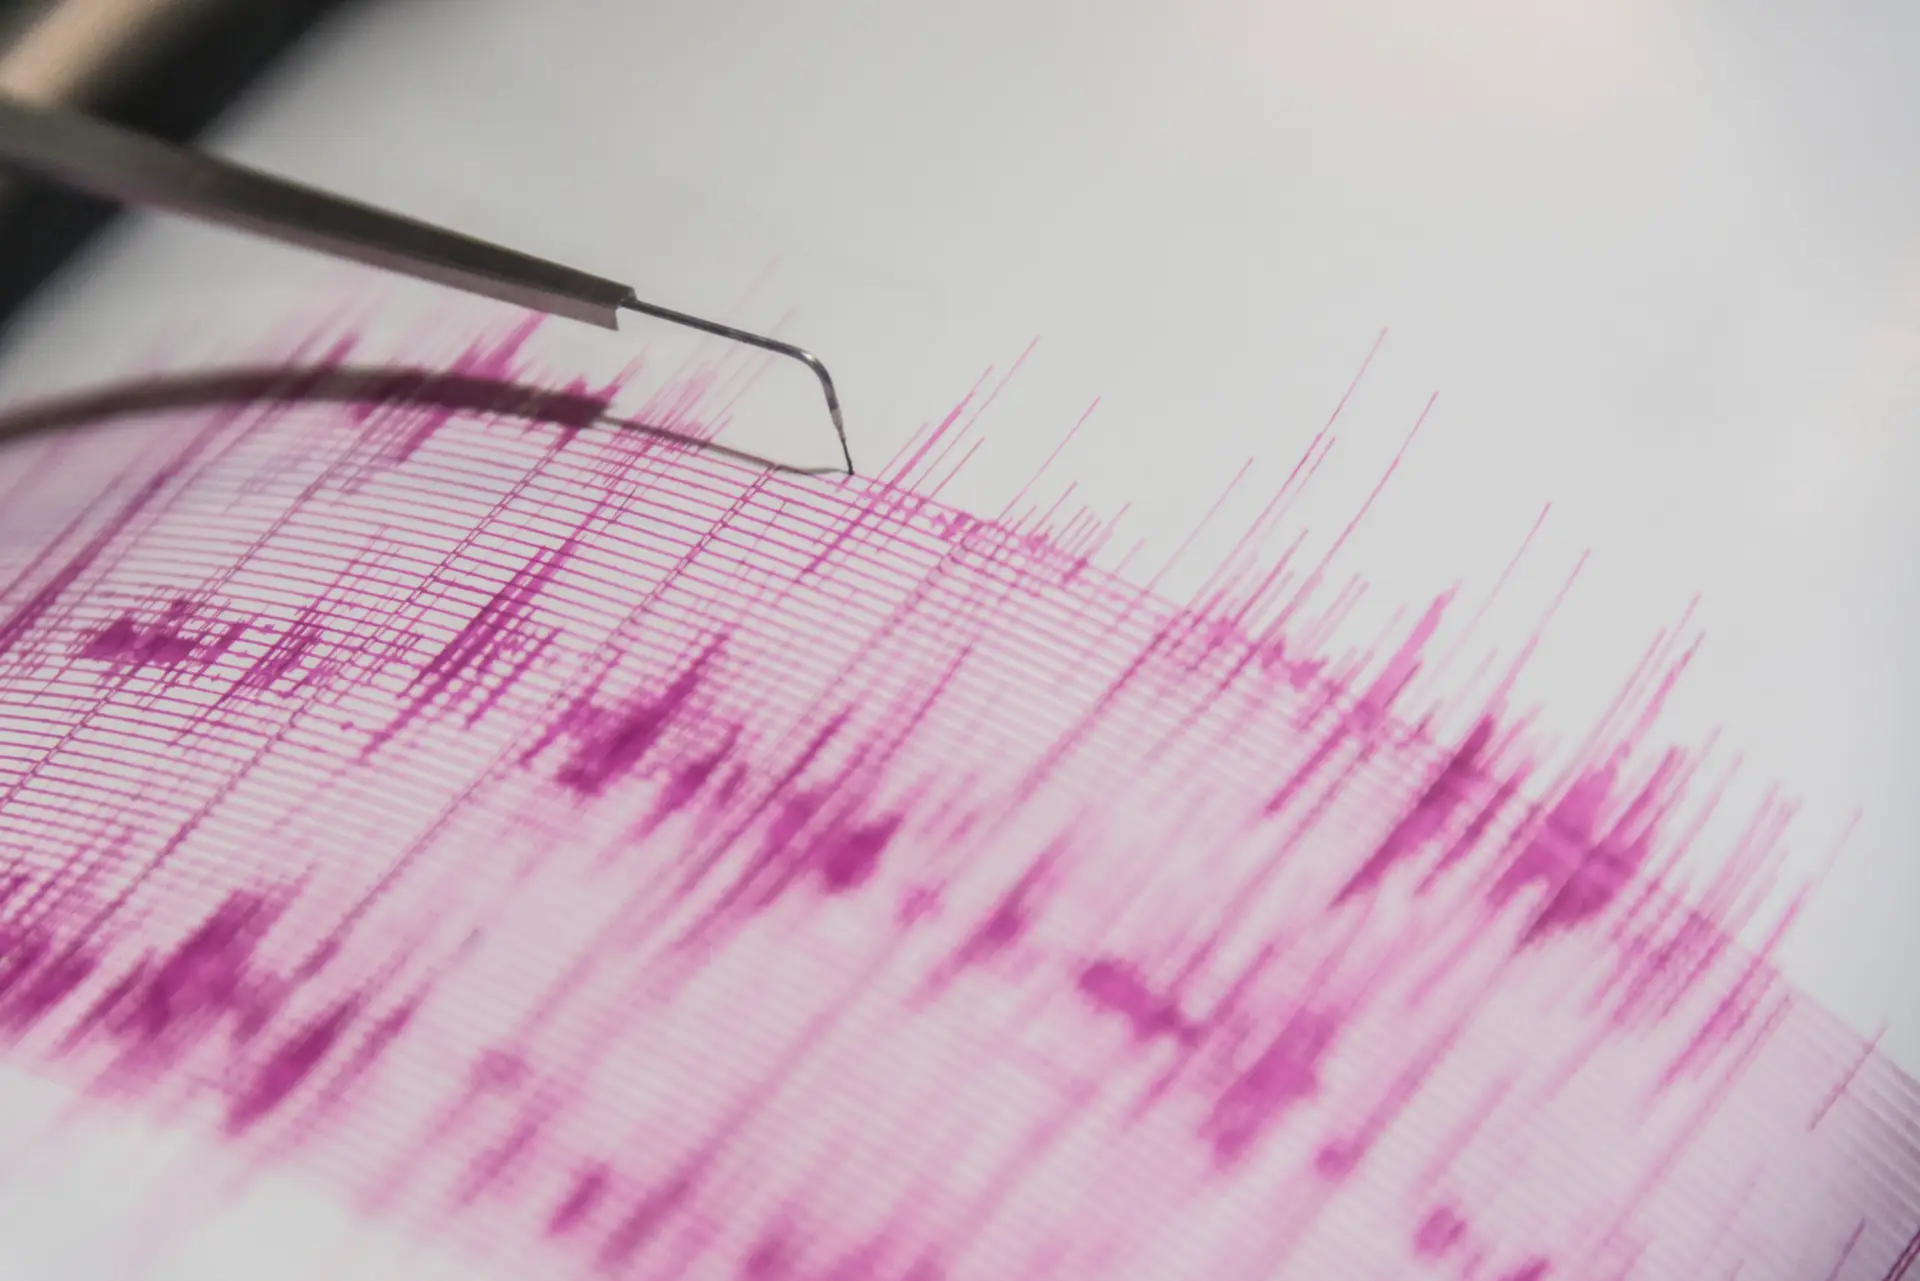 Três sismos de magnitude superior a 5,0 em menos de 25 minutos na ilha do Corvo